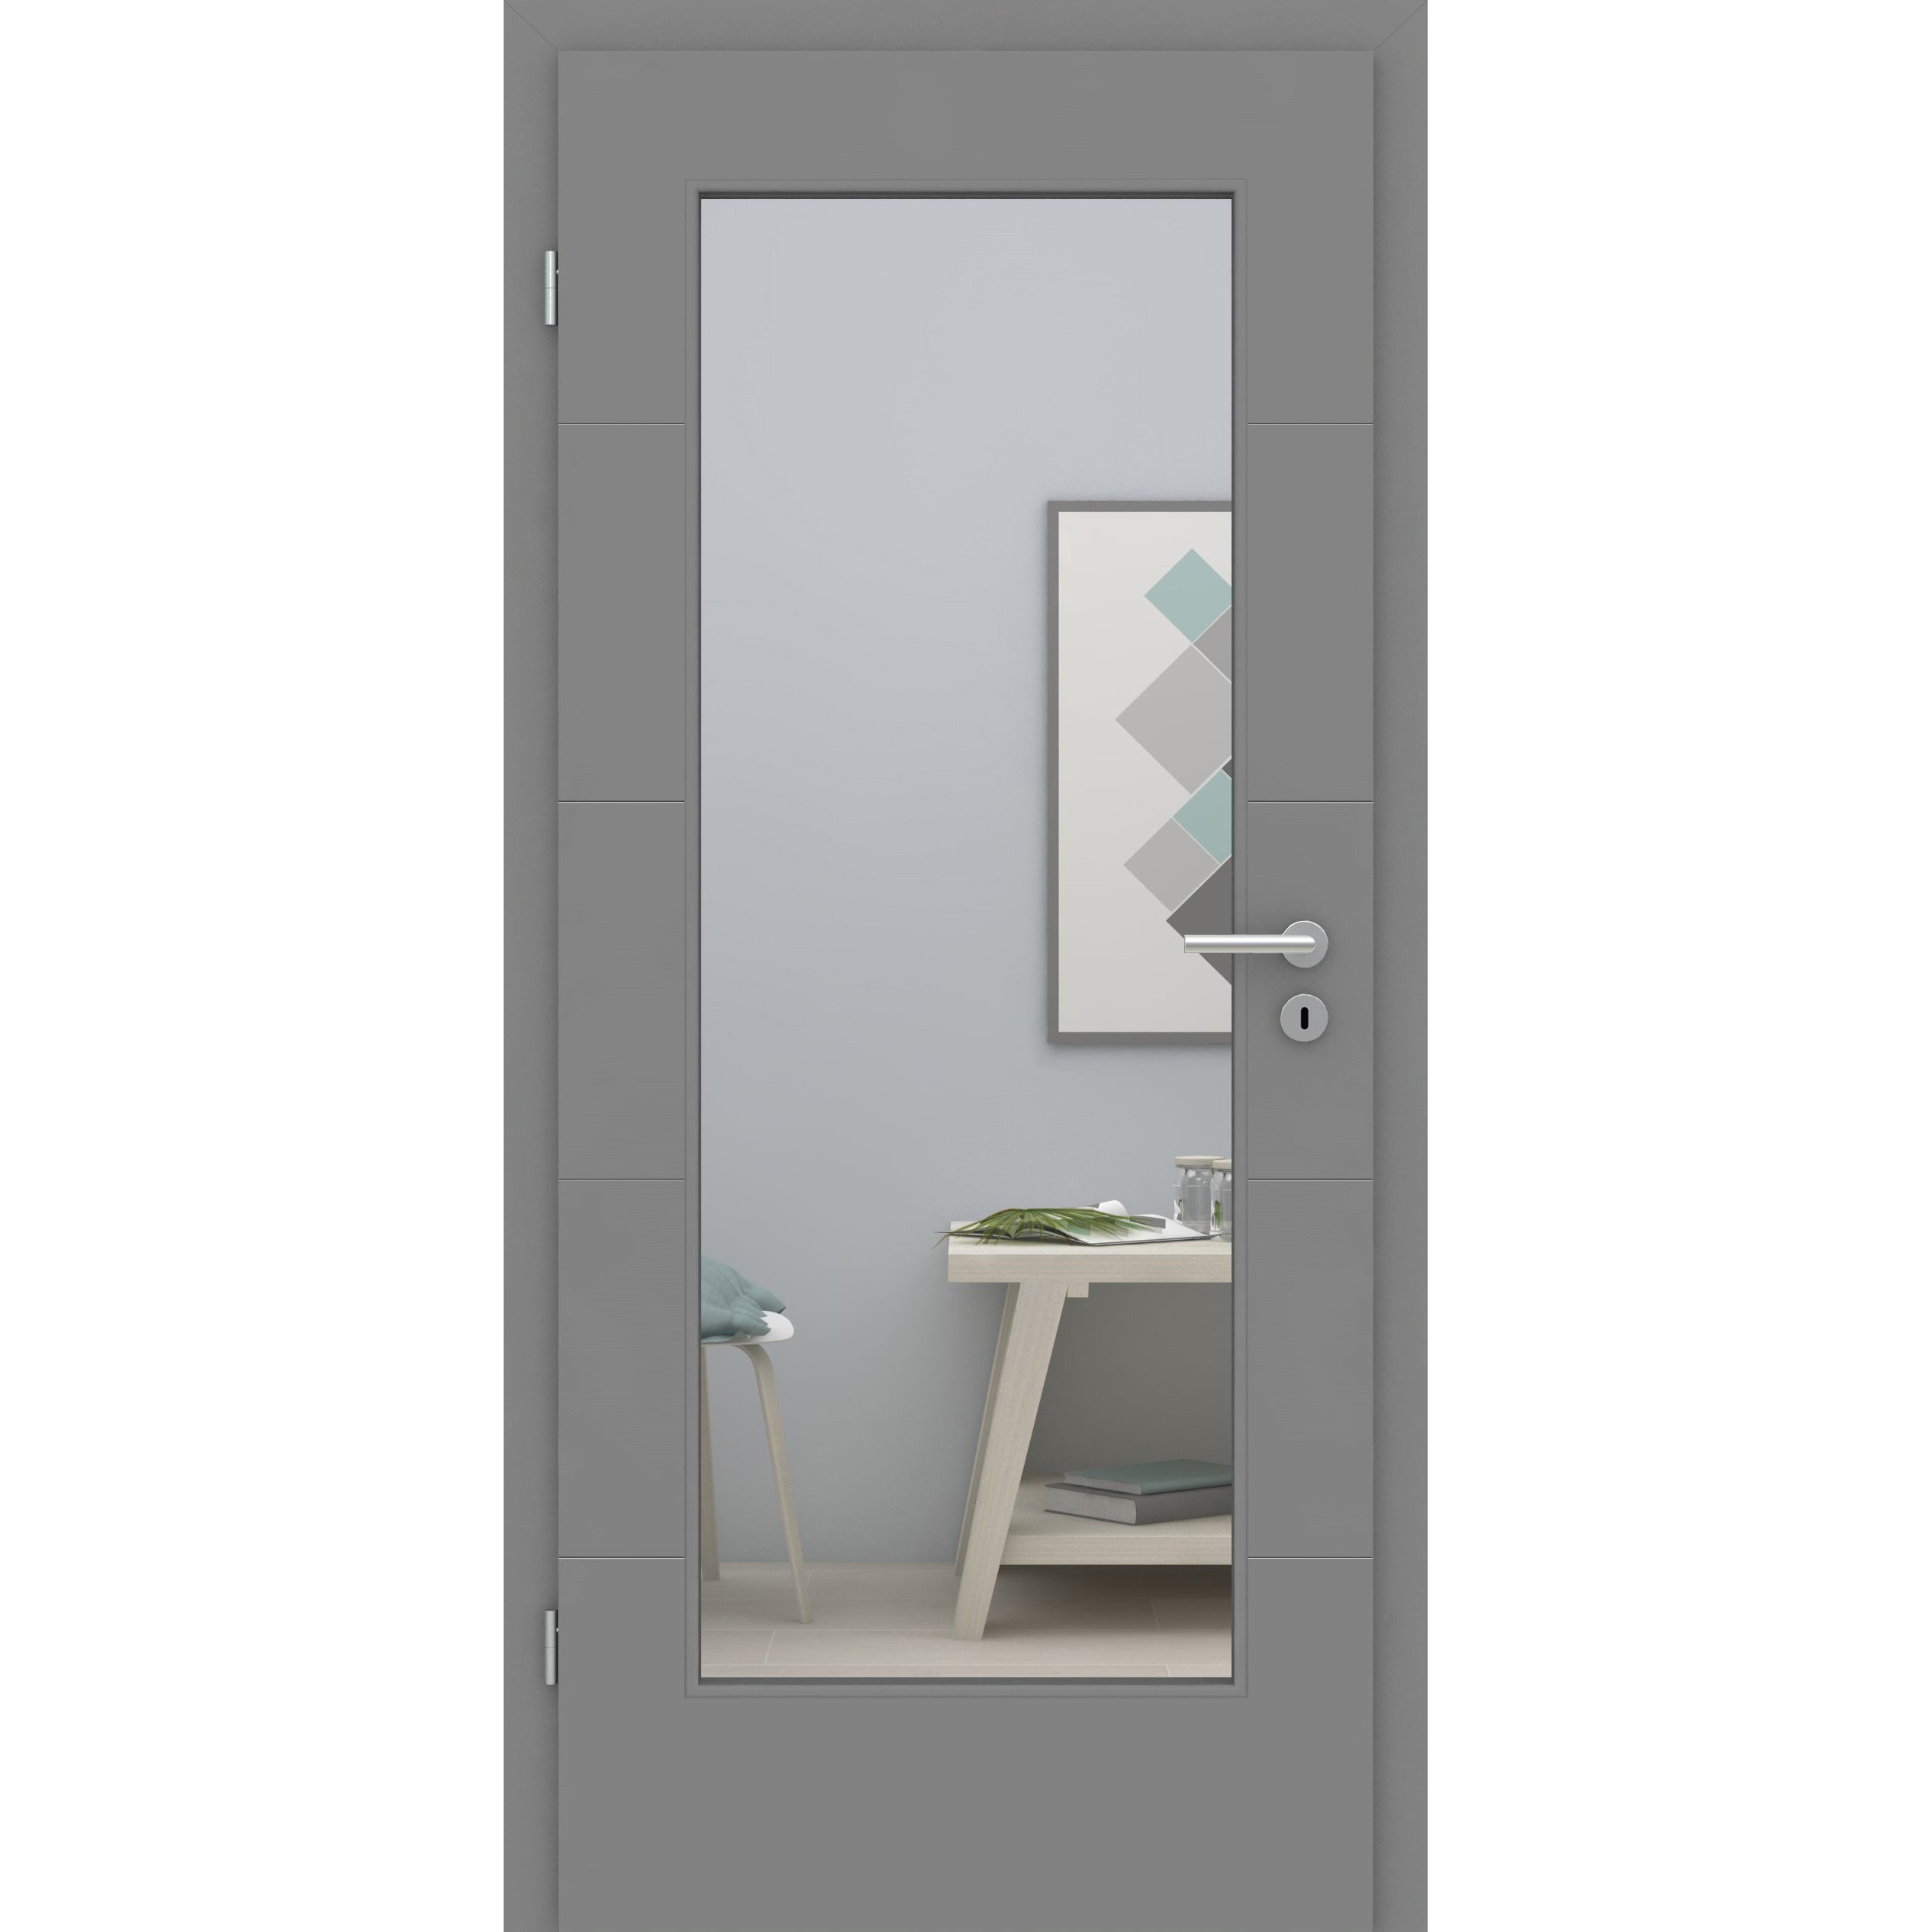 Zimmertür mit Lichtausschnitt grau 4 Rillen quer Designkante - Modell Designtür Q47LA